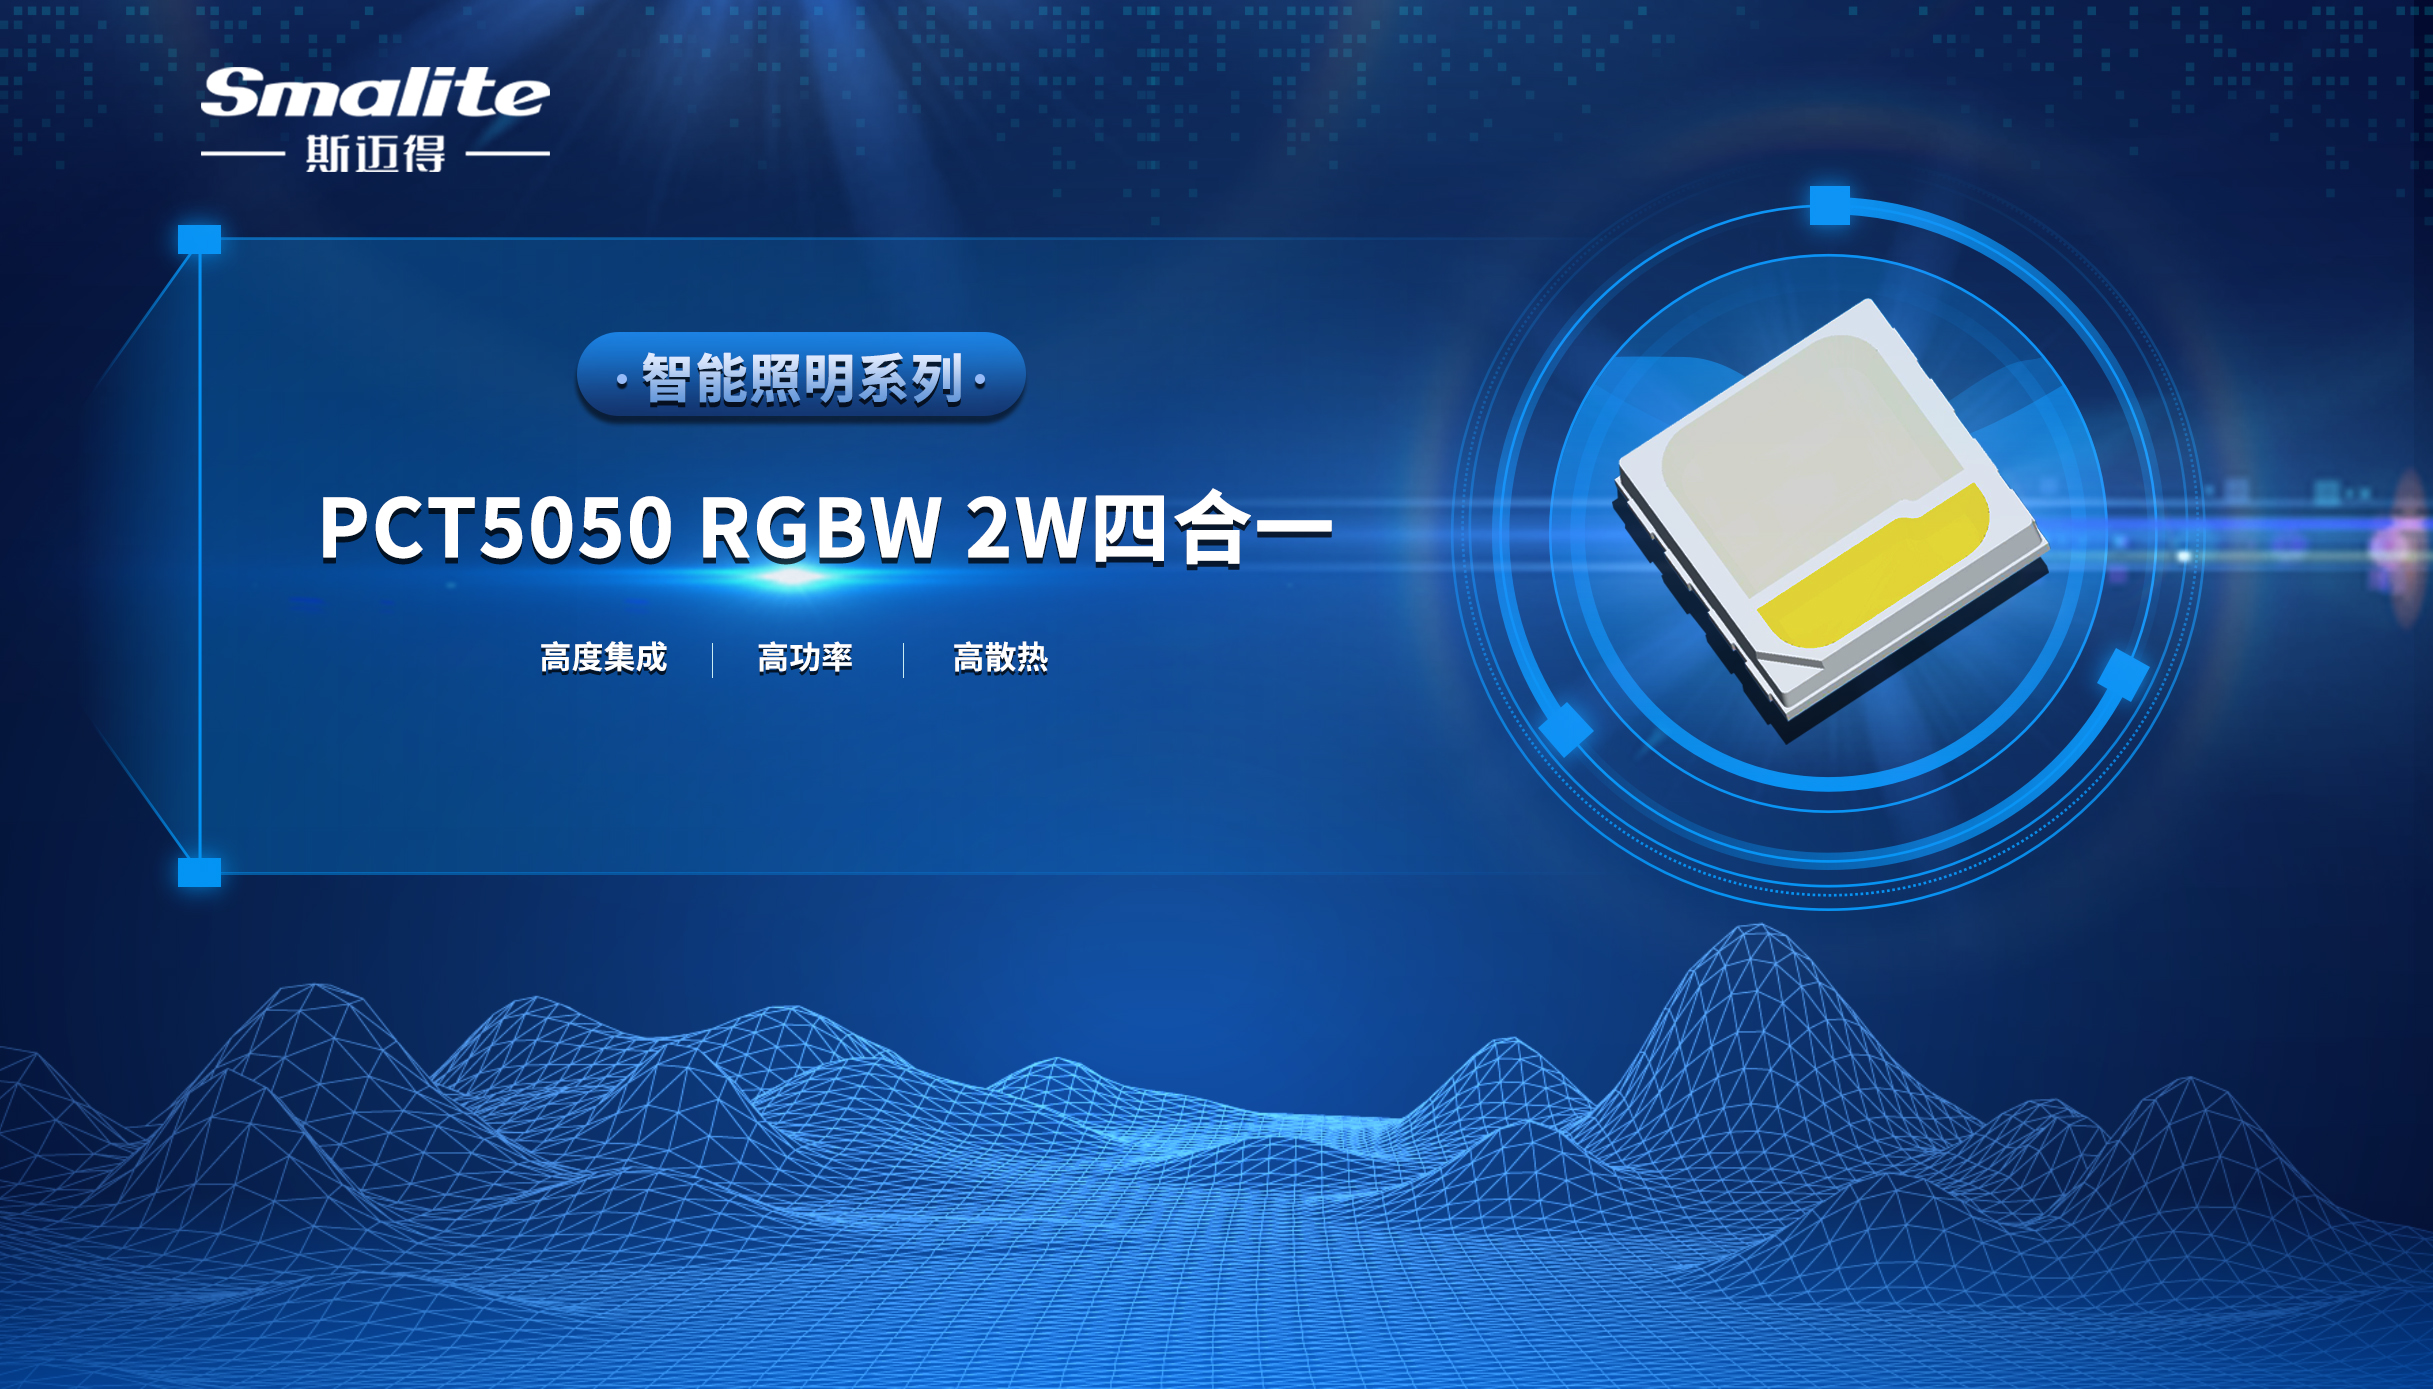 斯迈得推PCT5050 RGBW 2W四合一智能照明系列产品